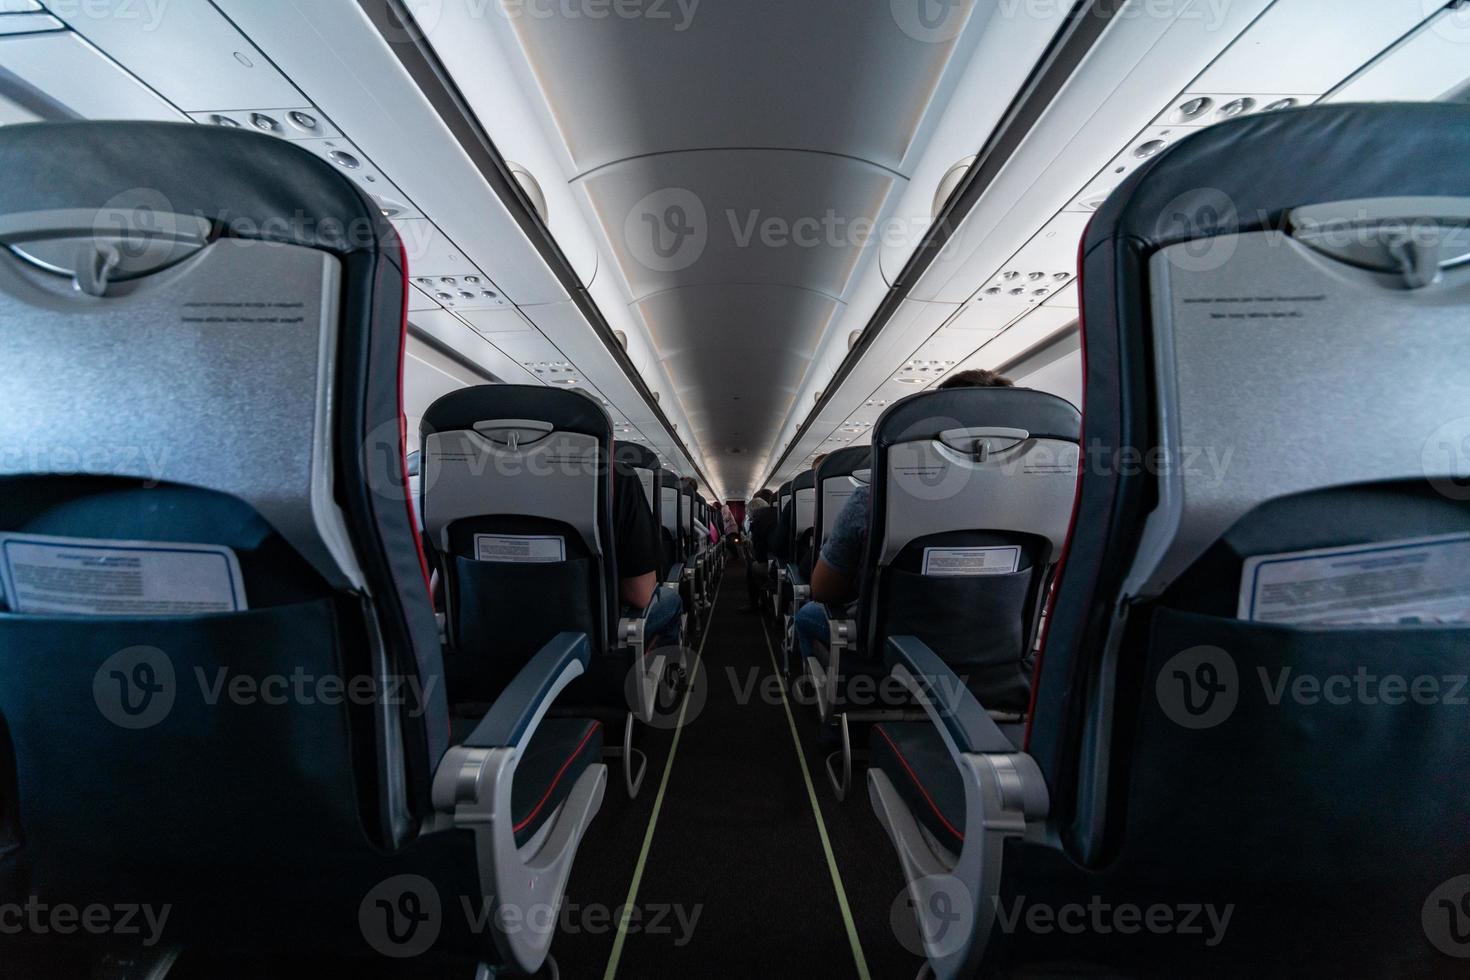 Flugzeugkabinensitze mit Passagieren. Economy Class der neuen günstigsten Low-Cost-Airlines ohne Verspätung oder Flugannullierung. Reise in ein anderes Land. foto